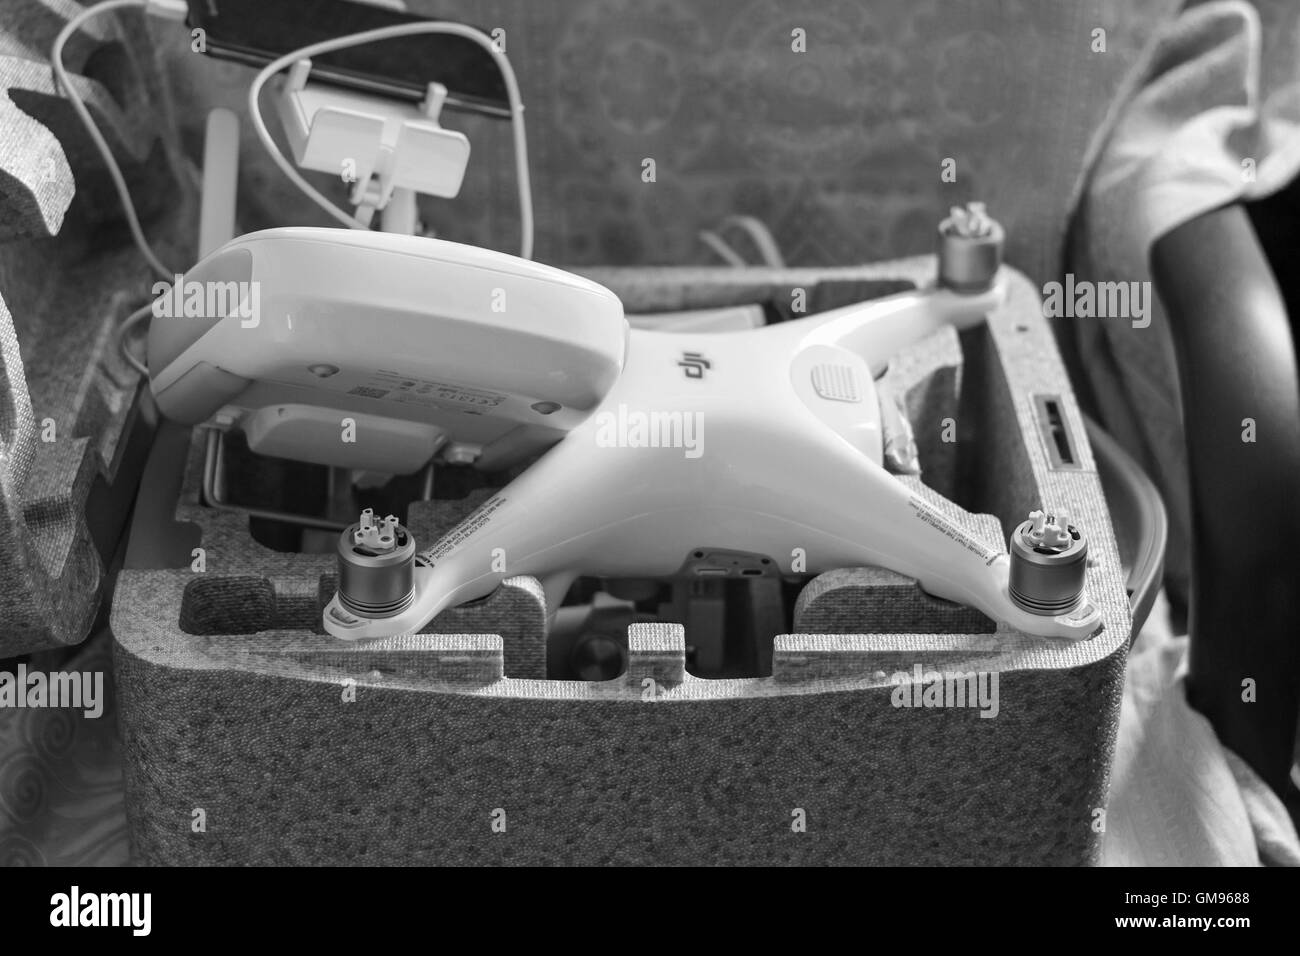 Russia, Poltavskaya village - 1 Maggio 2016: Quadrocopters DJI Phantom 4 nella propria custodia aperta. Disimballare il nuovo quadrocopter Foto Stock